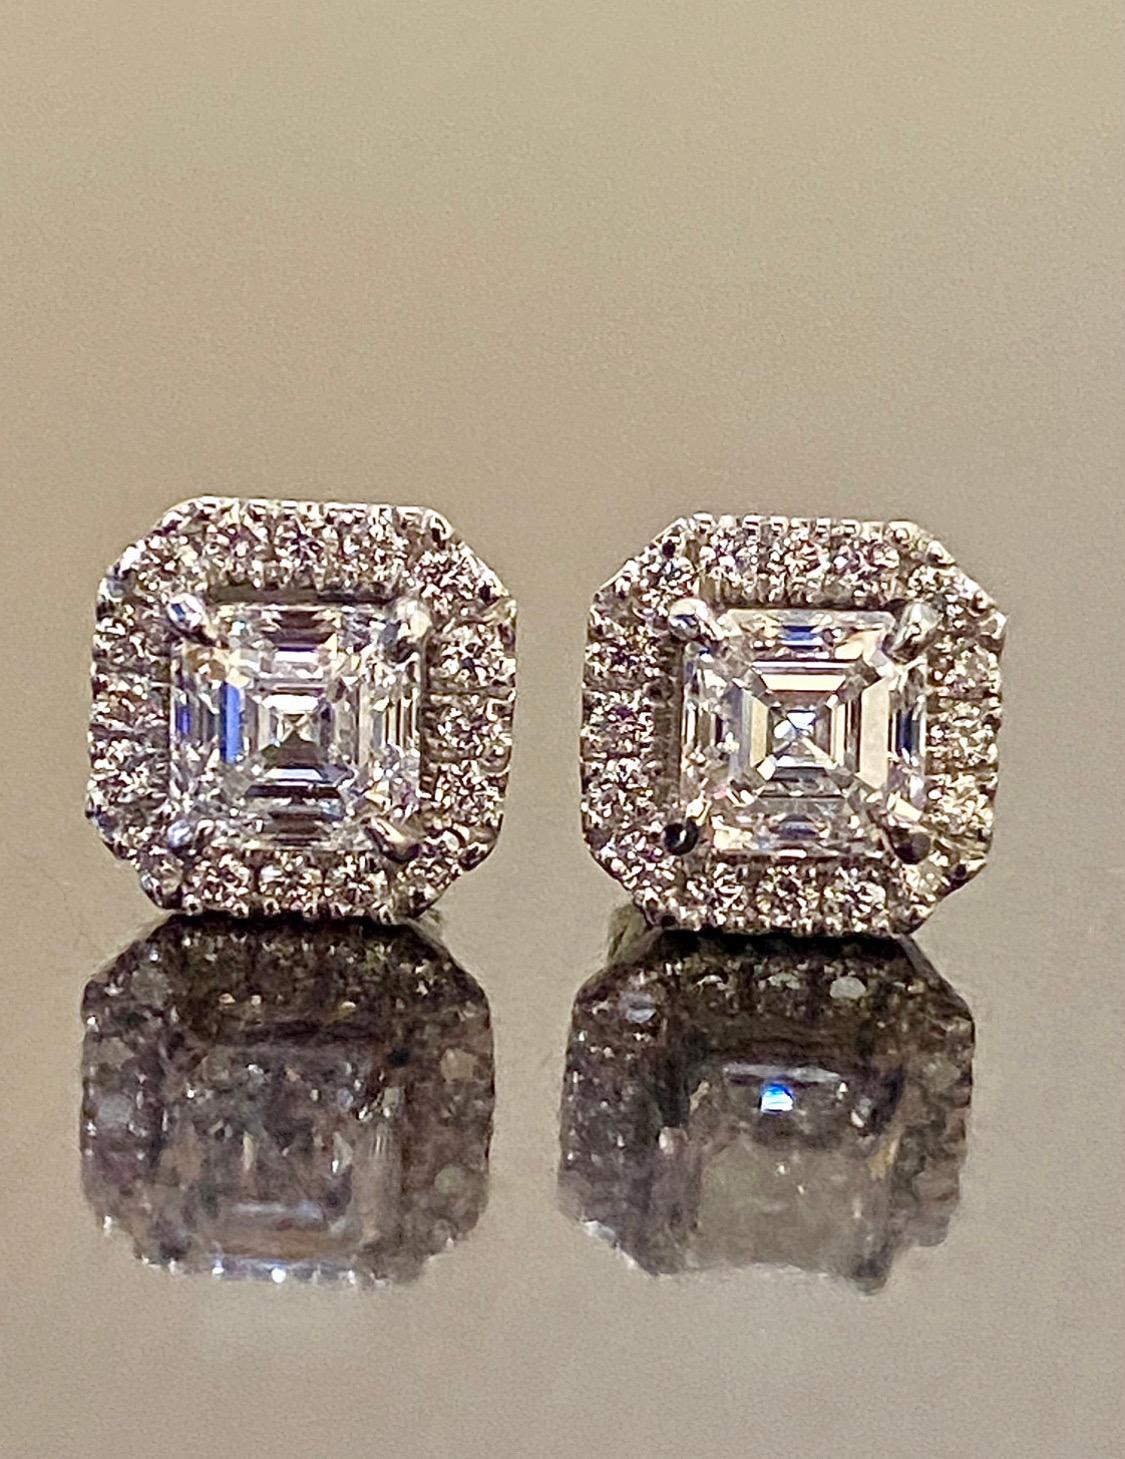 DeKara Designs Collection'S

Metall - 90% Platin, 10% Iridium.

Steine- 2 GIA-zertifizierte Diamanten im Asscher-Schliff F Farbe SI1 Reinheit 0,91 Karat und 0,91 Karat, 32 runde Diamanten F-G Farbe VS2-SI1 Reinheit, 0,40 Karat.

0,91 F SI1 GIA